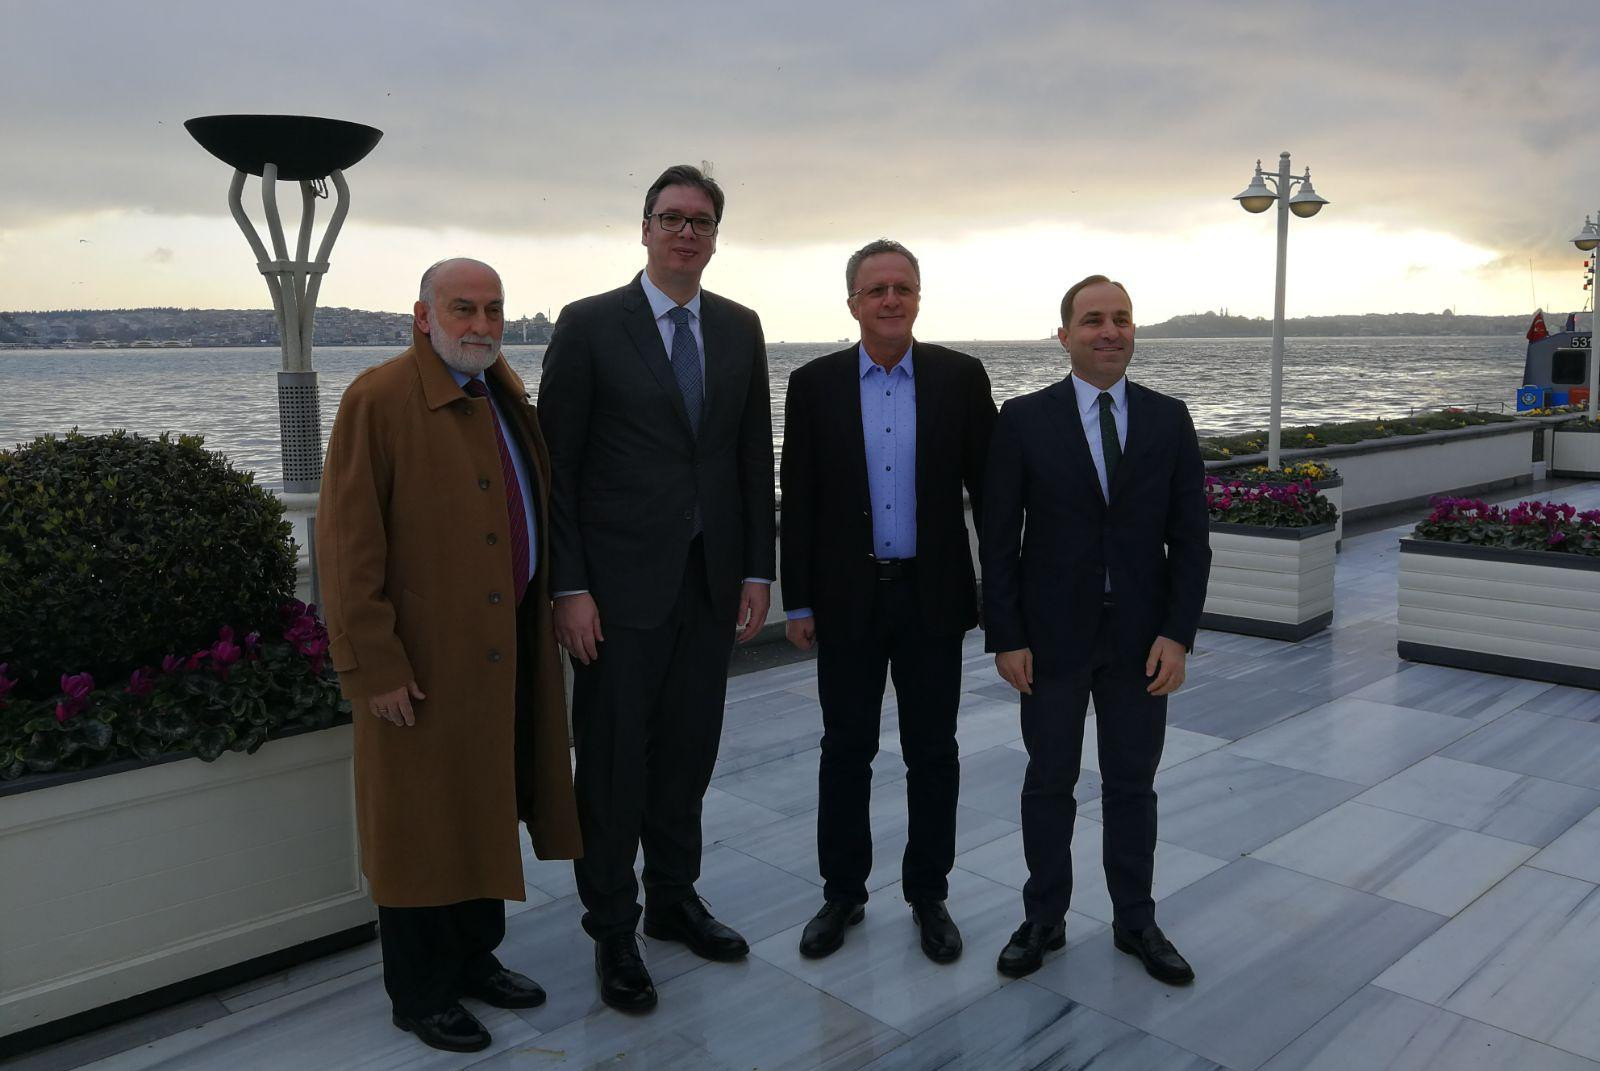 PREDSEDNIK VUČIĆ DOPUTOVAO U TURSKU: U Istanbulu dobrodošlicu mu poželeo predsednik Taj grupe Mesud Toprak!